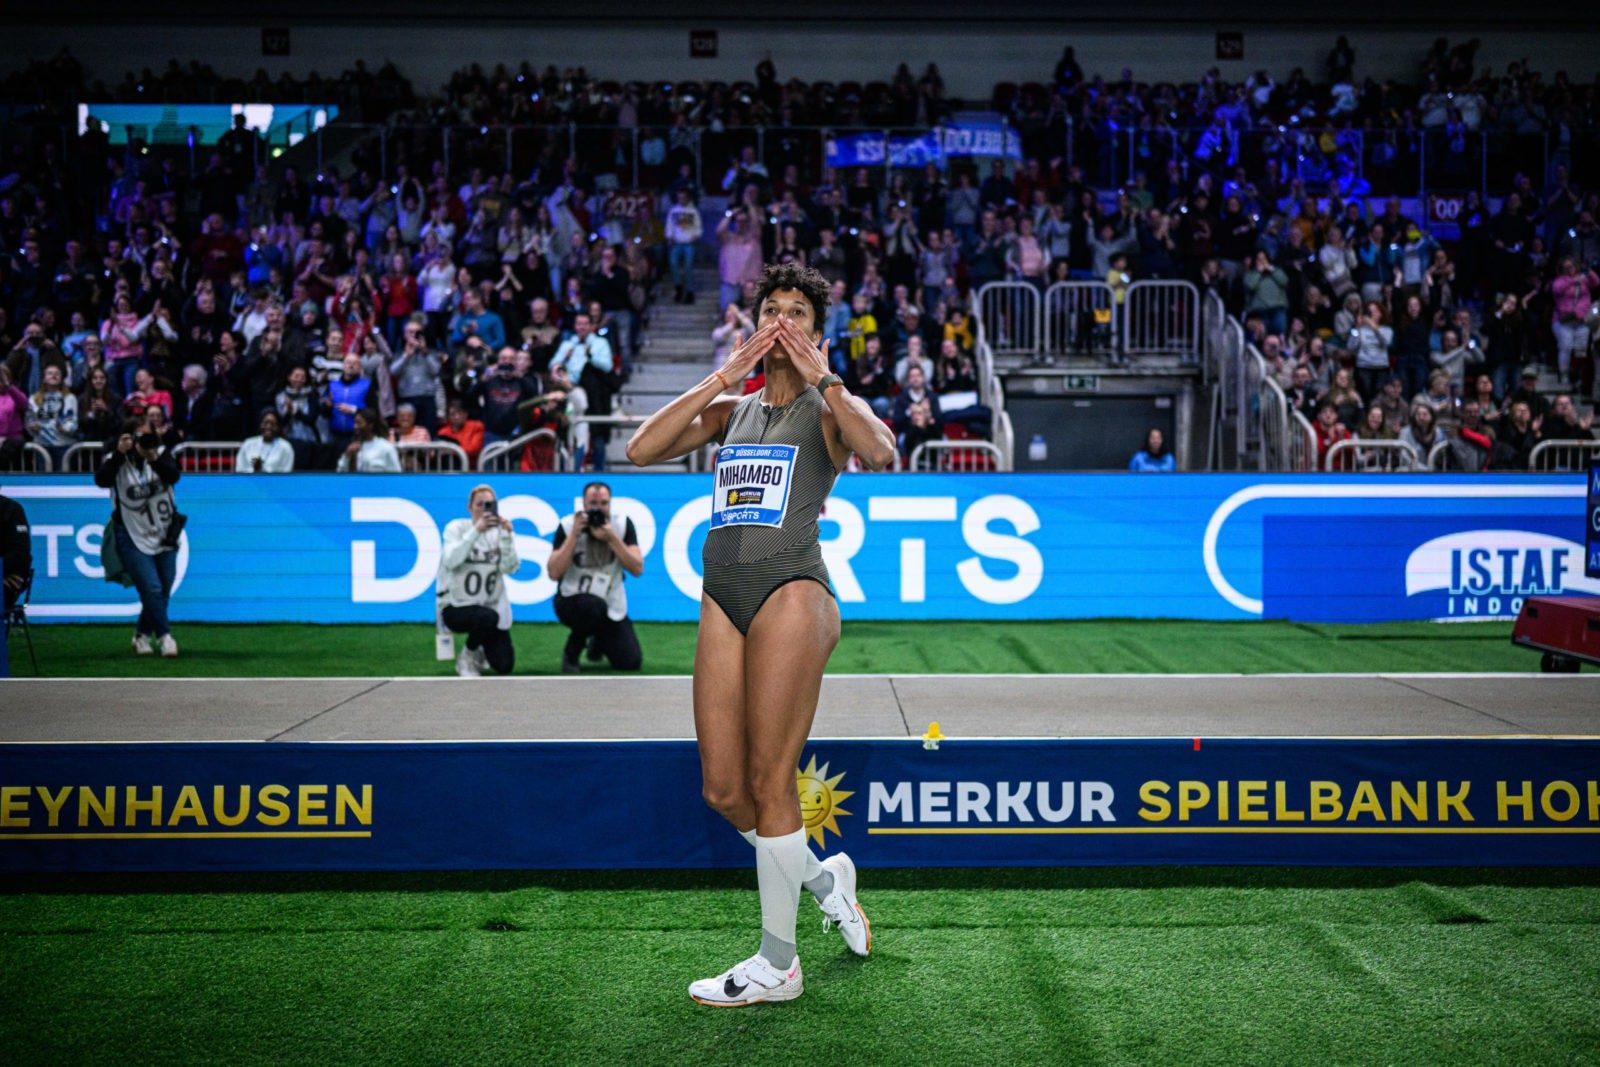 Malaika Mihambo und Gina Lückenkemper krönen mit Aufholjagden ein emotionales Leichtathletik-Spektakel